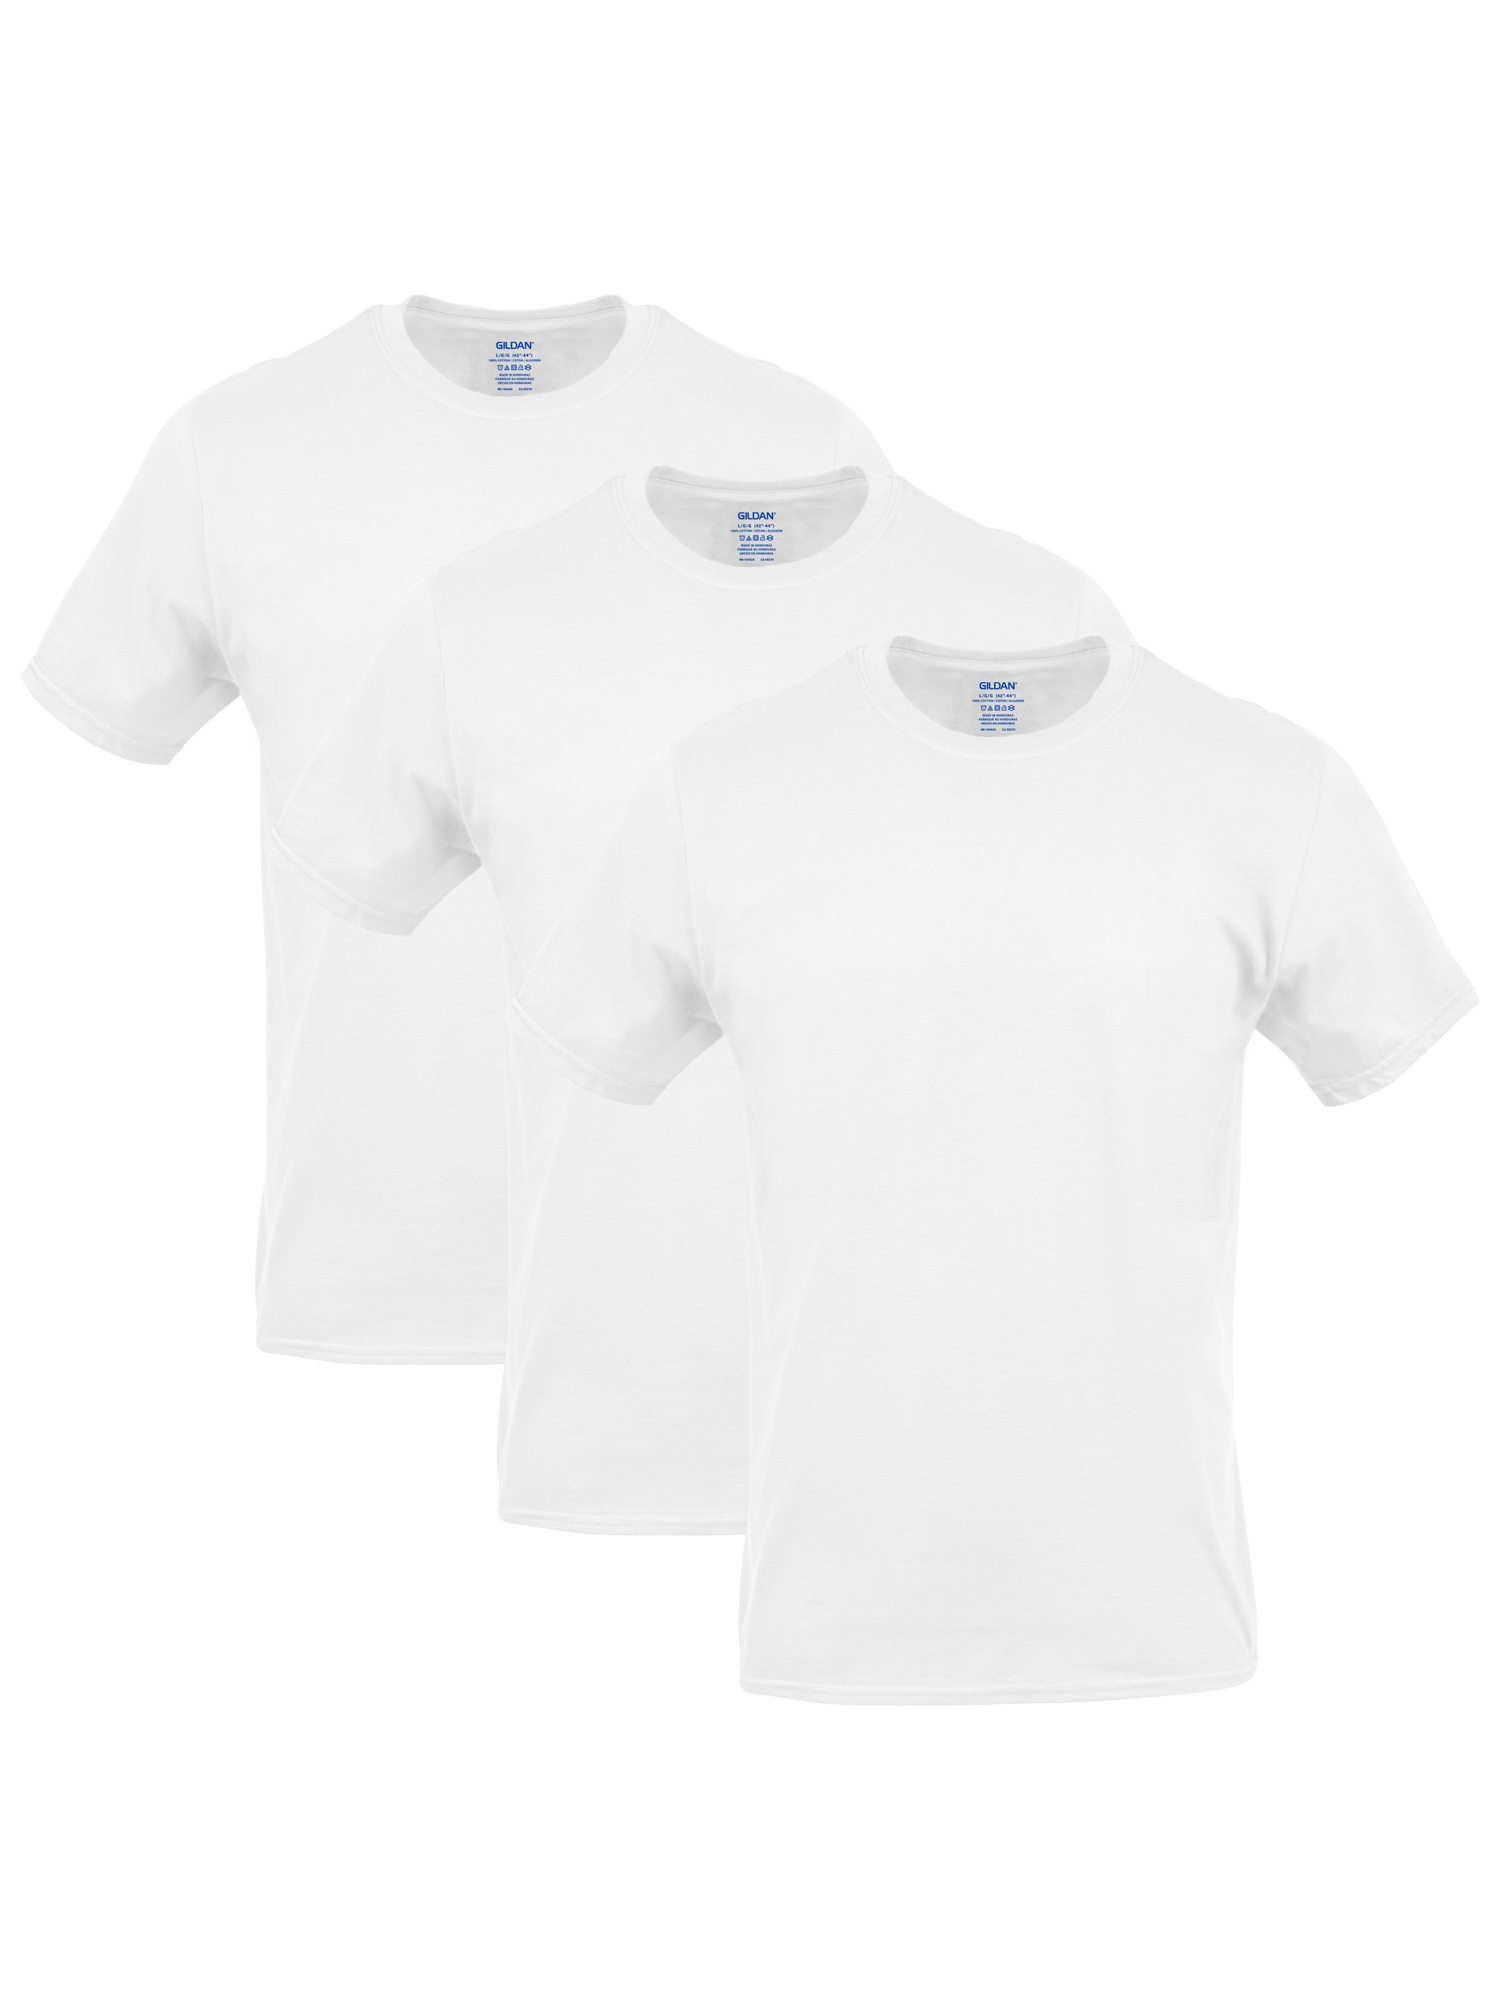 Gildan Men's Crew T-Shirts, 3-Pack - image 1 of 5